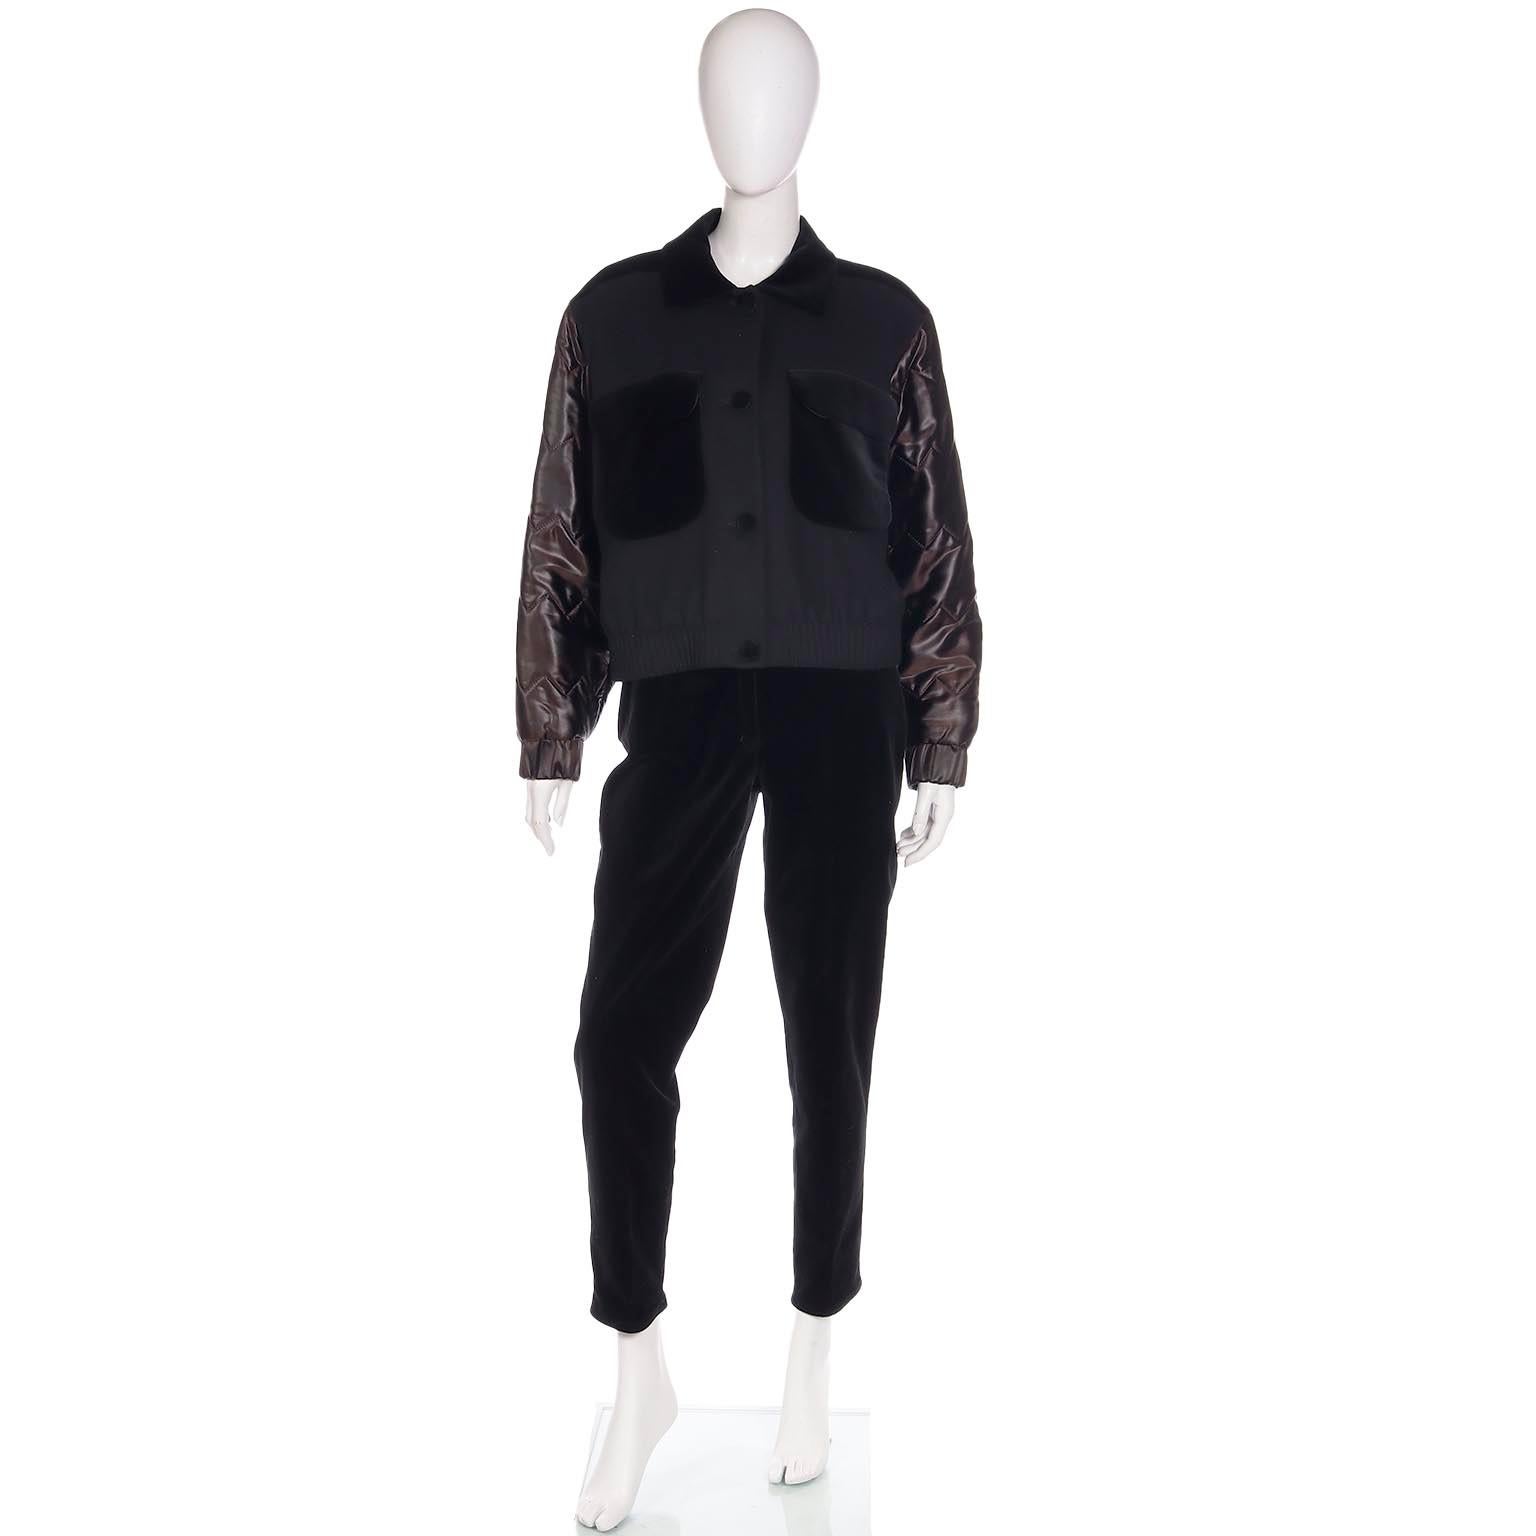 Ce costume 2 pièces Louis Feraud des années 1980 est en laine noire avec des bordures en velours de coton. L'ensemble comprend une veste bombardier facile à porter et un pantalon slim. Les pièces de Louis Feraud sont faites pour durer et nous